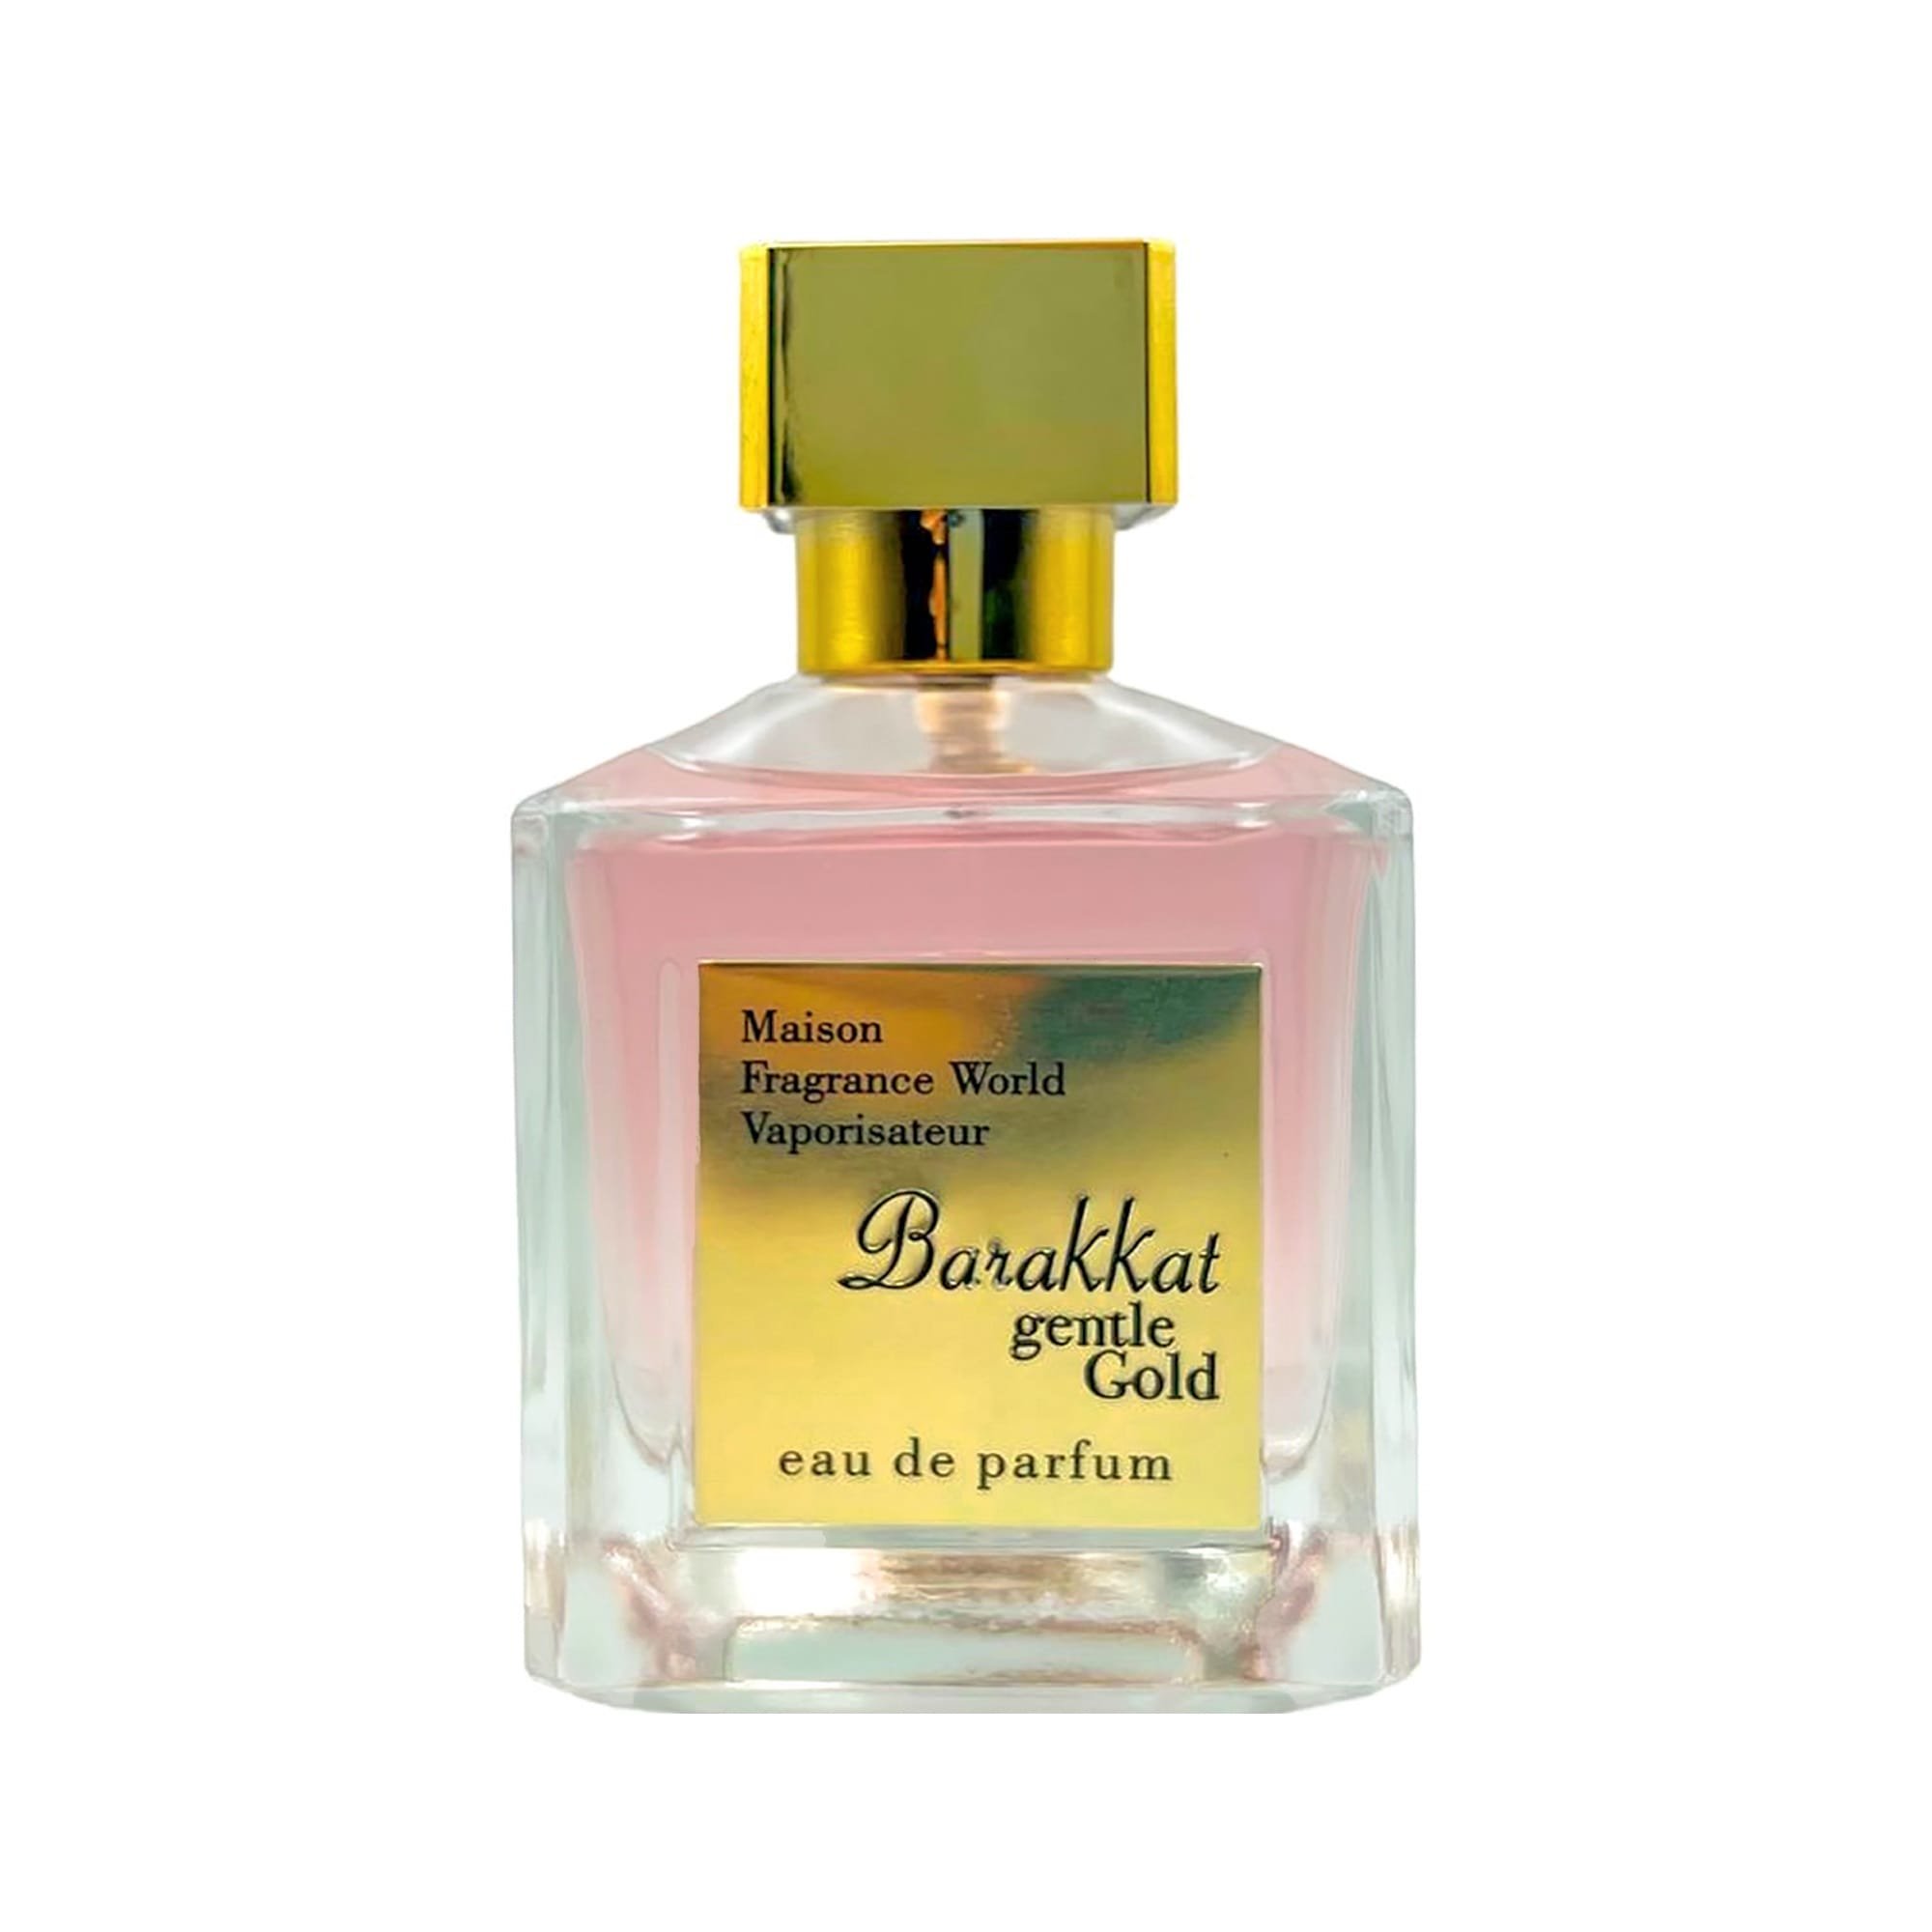 Fragrance World Champ De Rose Jacques Yves - Eau de Parfum